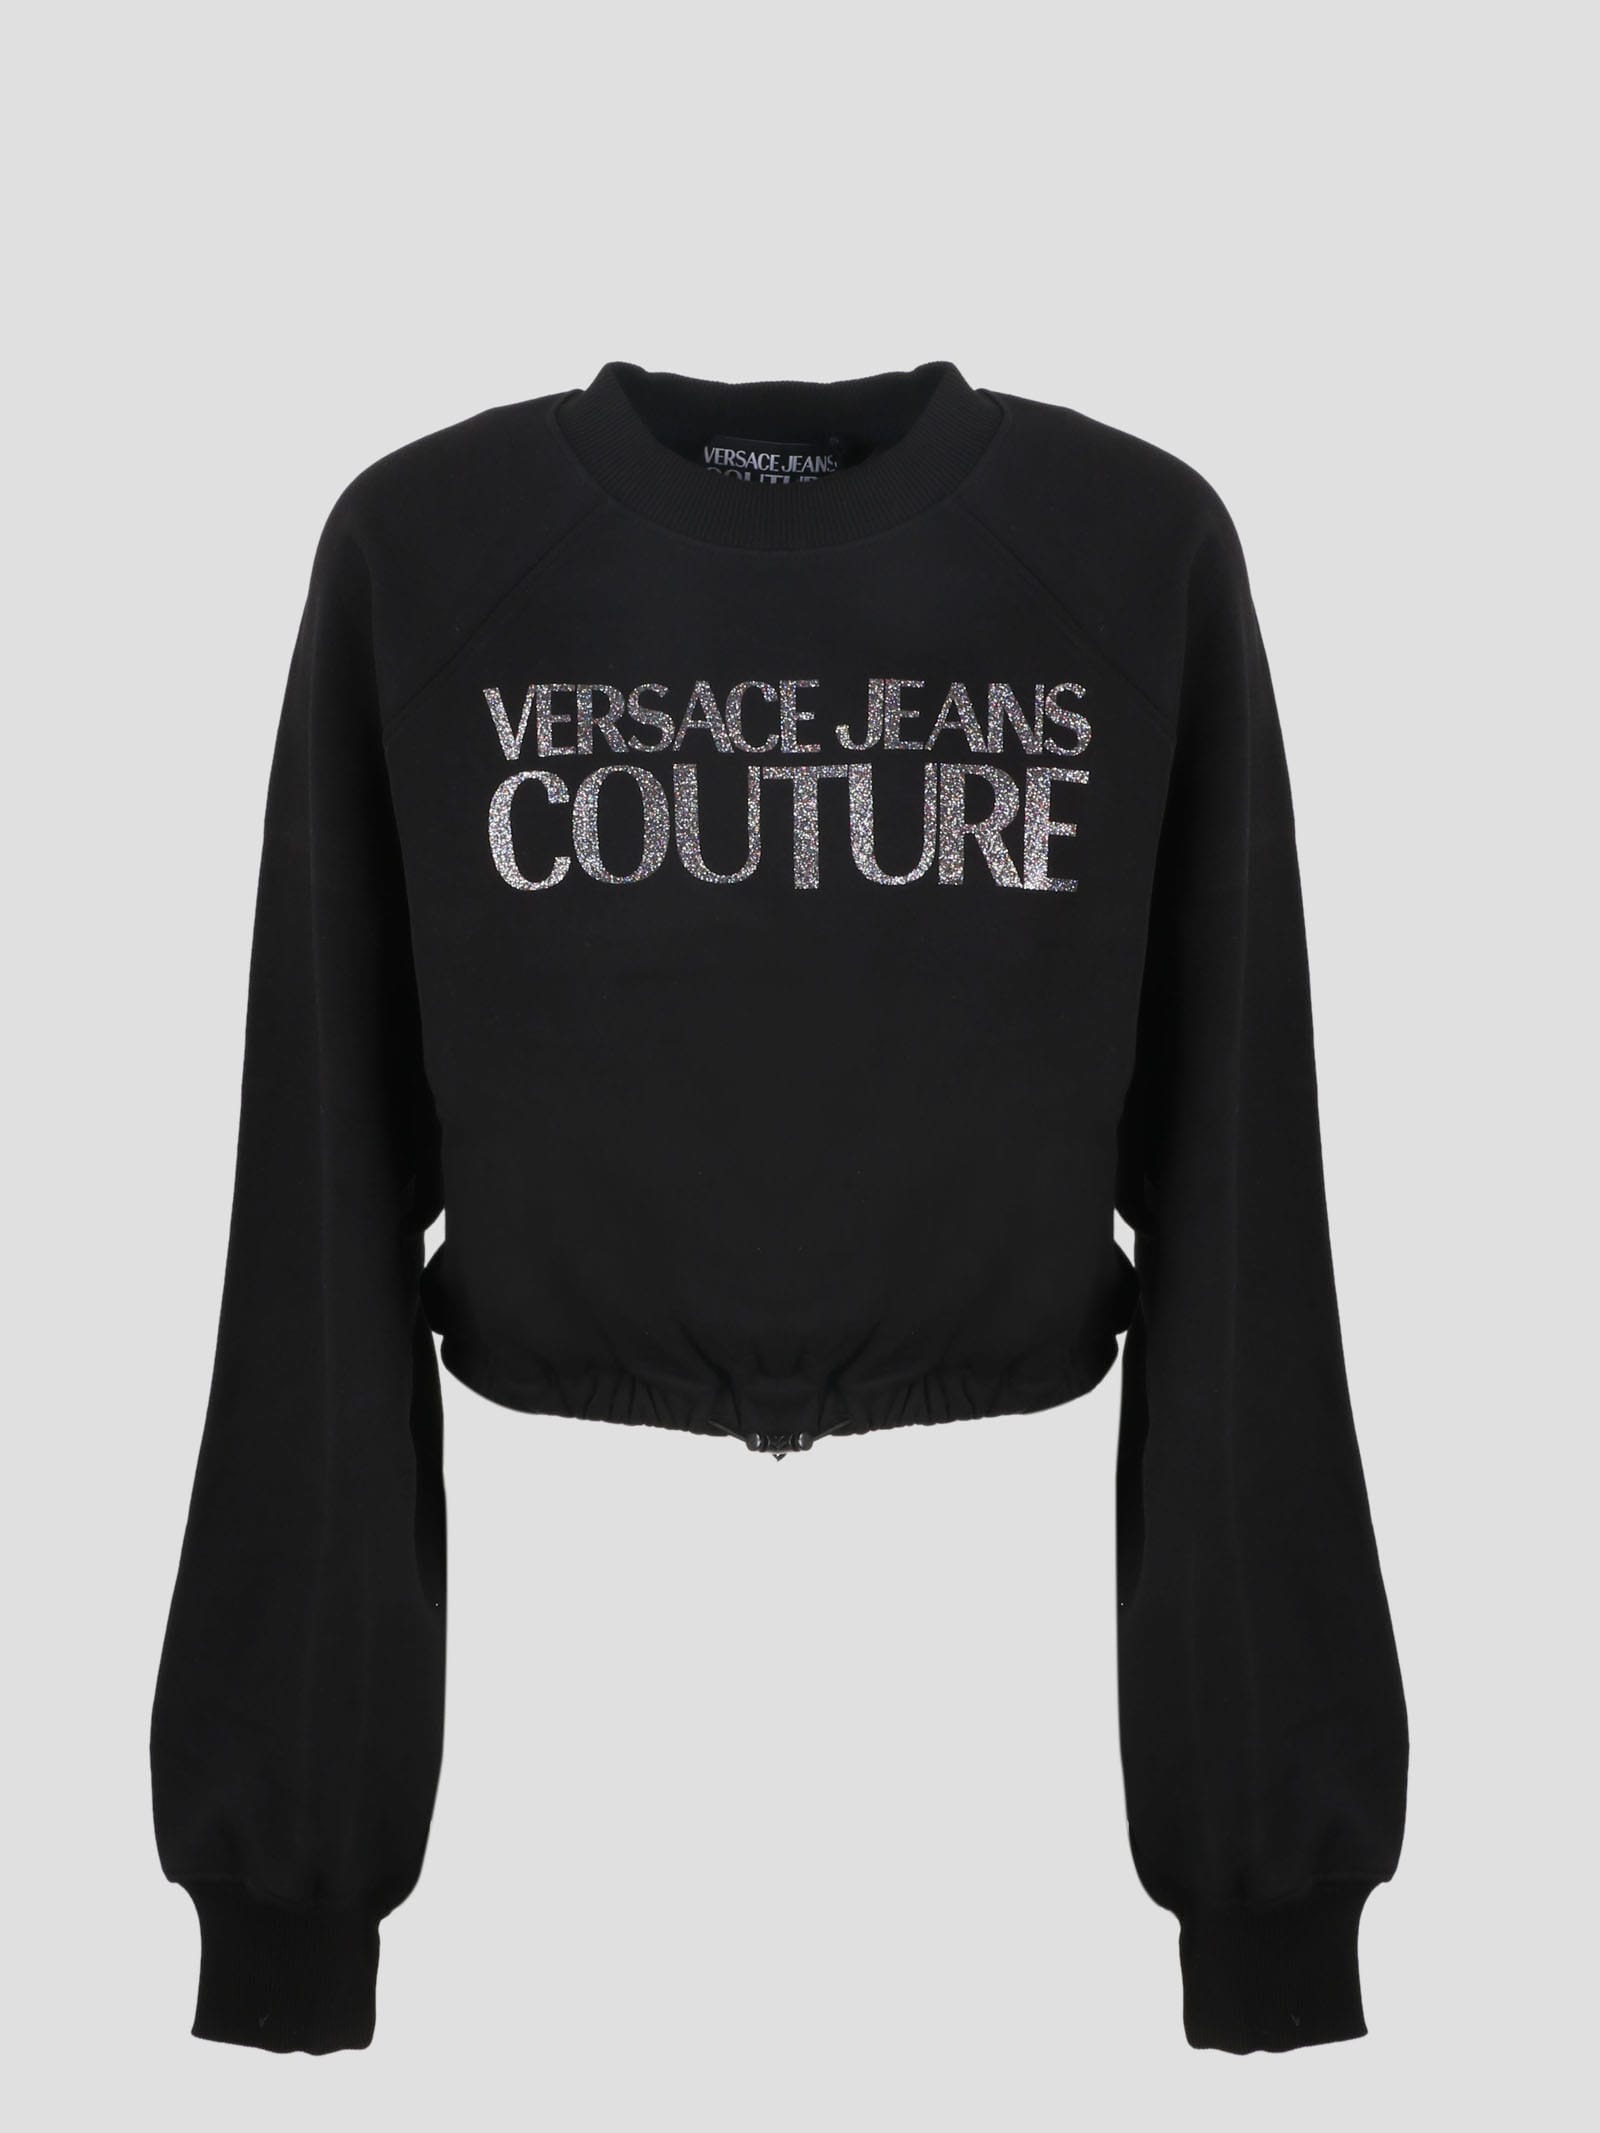 Versace Jeans Couture Logo Crop Sweatshirt